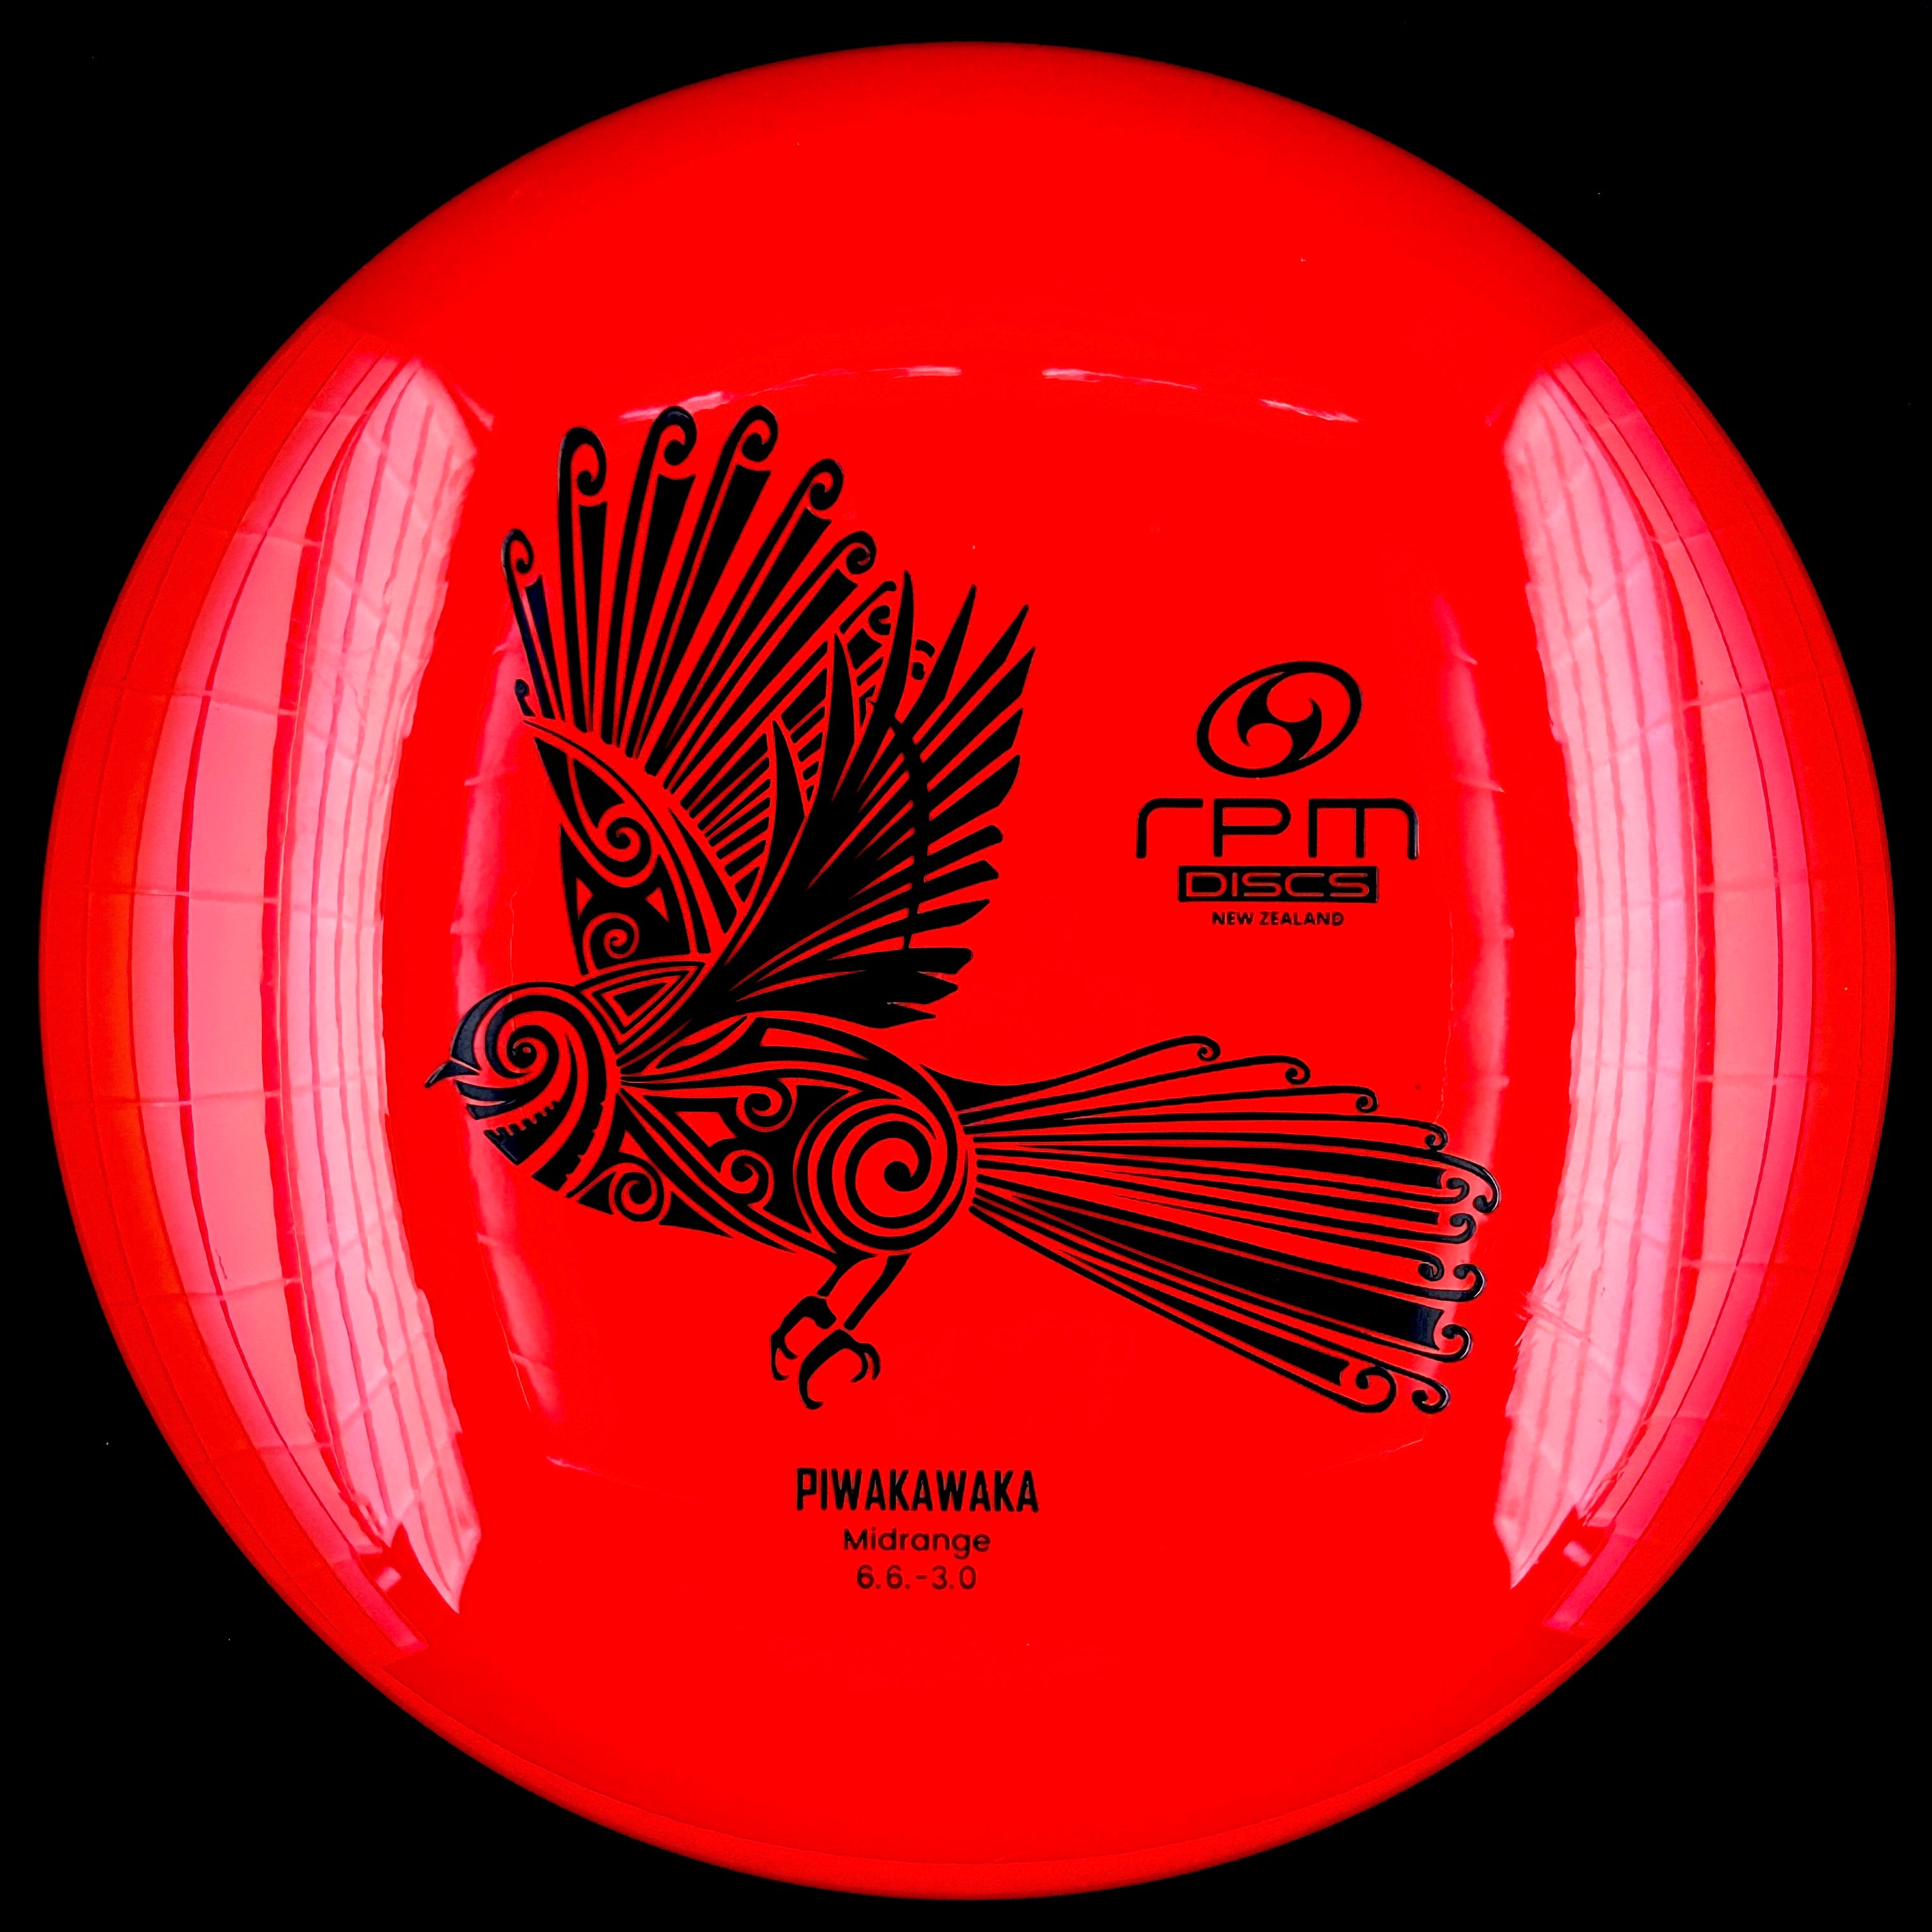 RPM Discs Atomic Piwakawaka